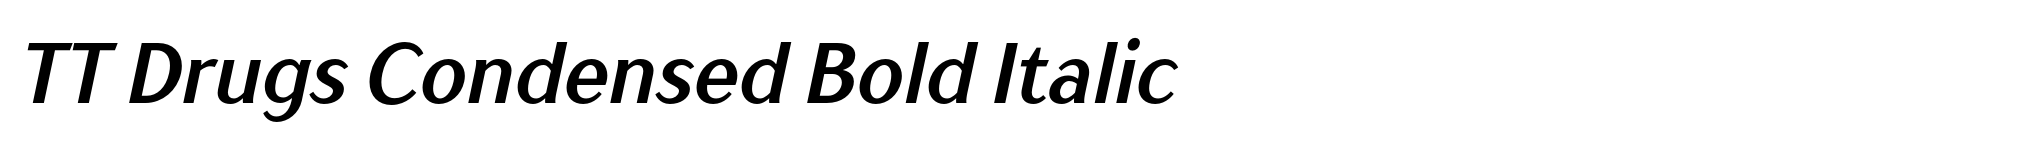 TT Drugs Condensed Bold Italic image